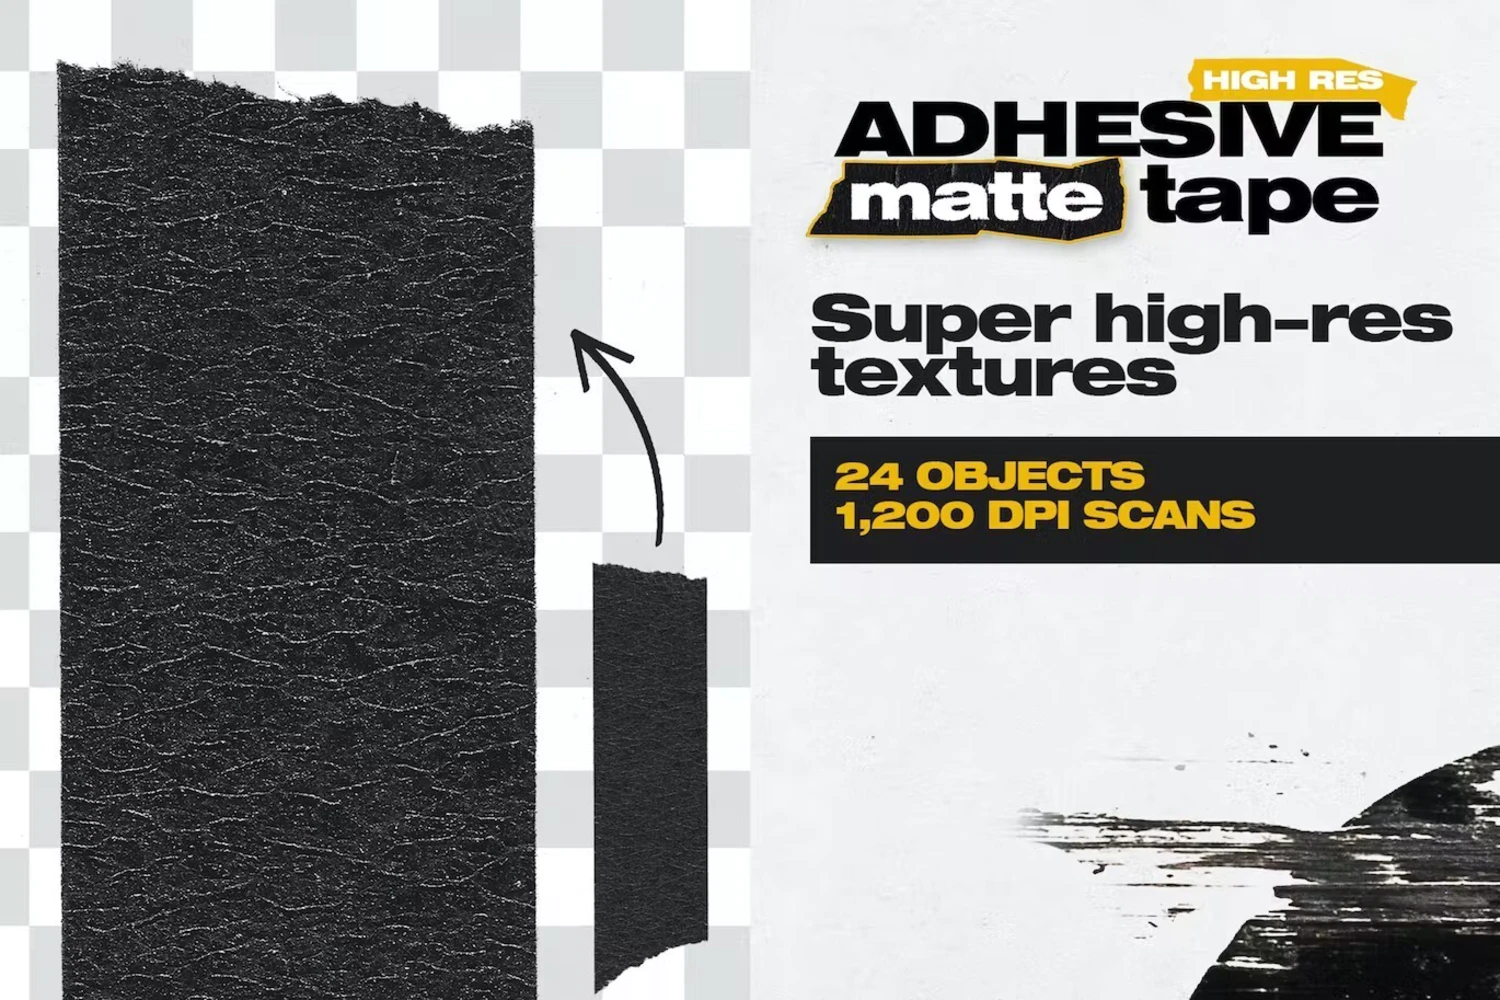 3272 潮流嘻哈酸性哑光粘性胶带背景图片设计素材 High Res Adhesive Matte Tape Objects